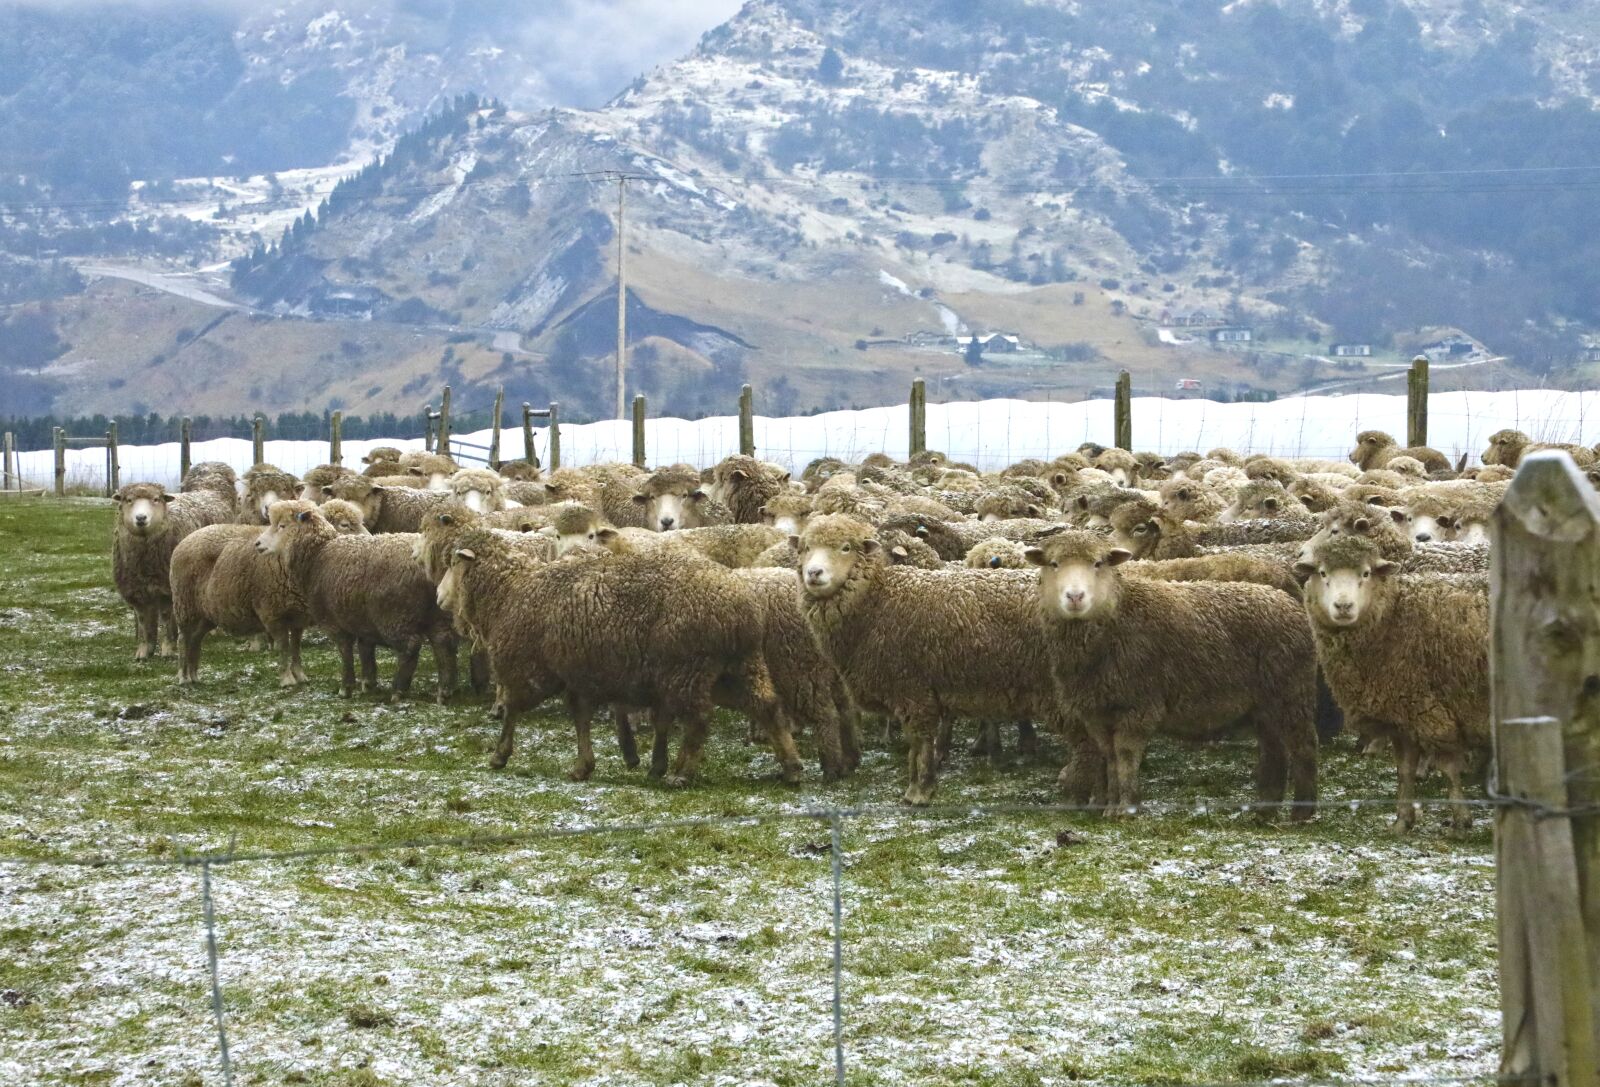 Canon EOS 5D Mark IV sample photo. Sheep, grass, winter photography